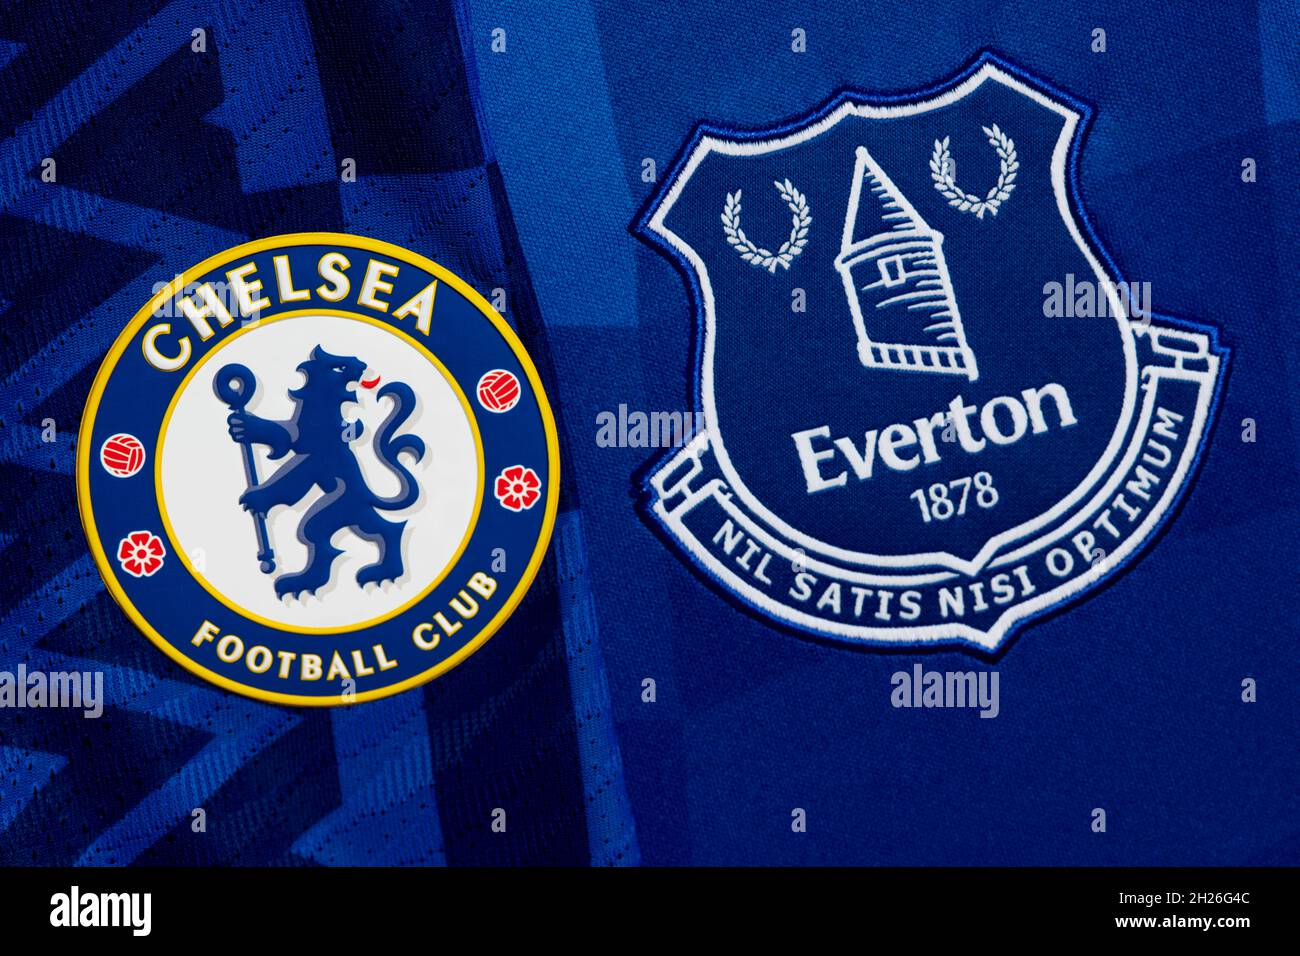 Nahaufnahme des Vereinswappens von Chelsea und Everton. Stockfoto